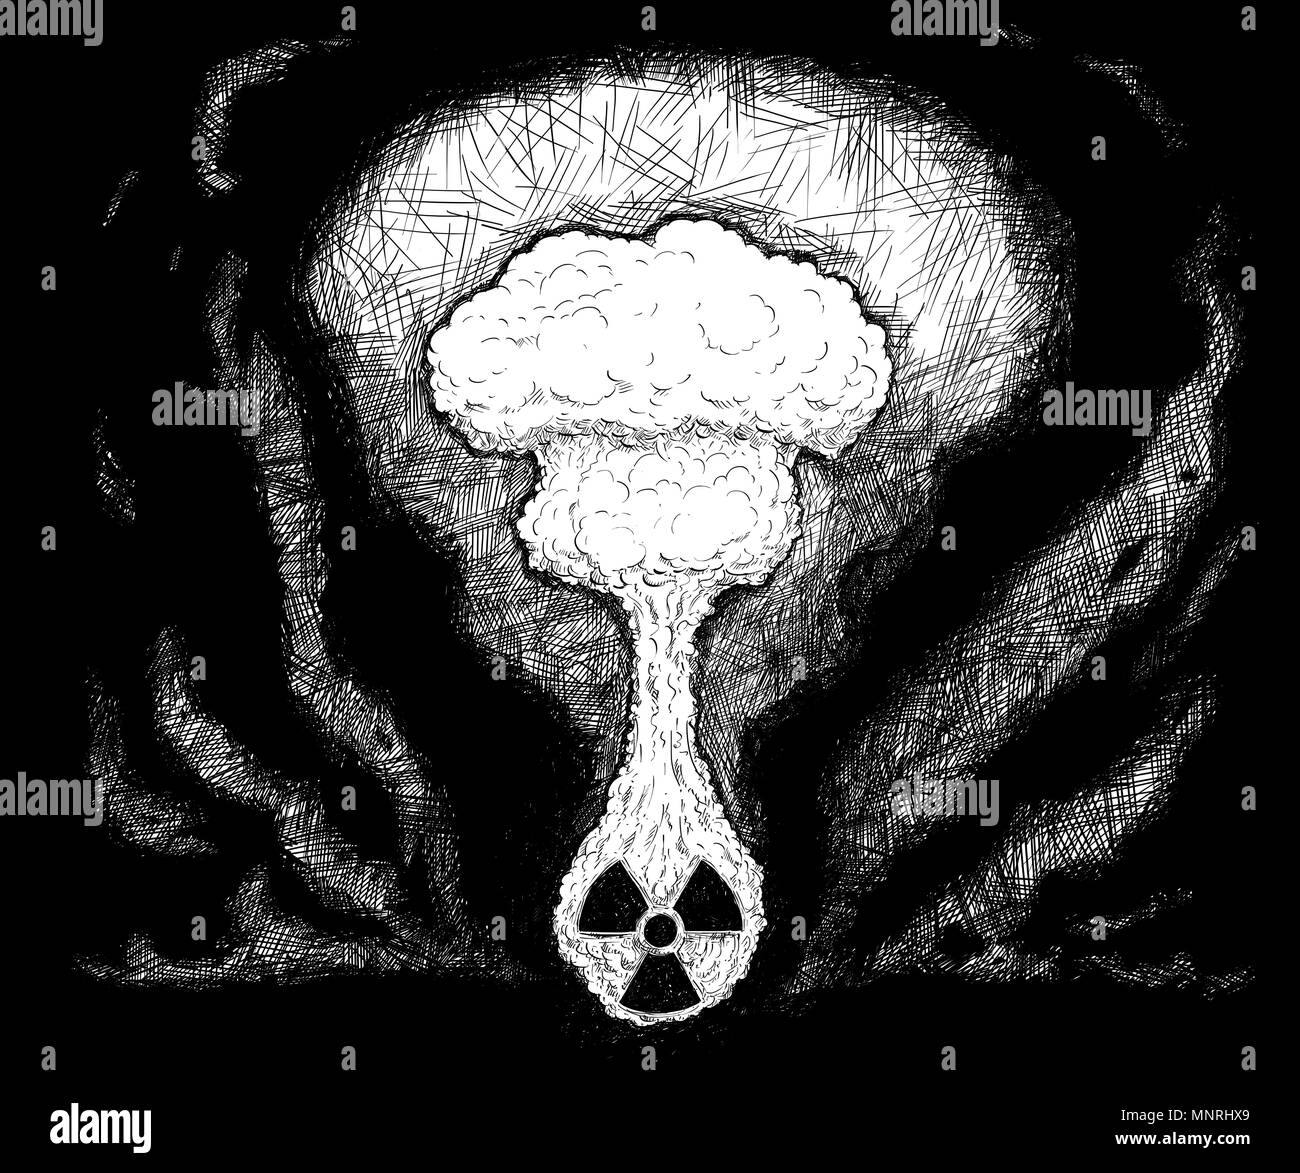 Penna artistica e disegno a inchiostro illustrazione di esplosione nucleare Foto Stock